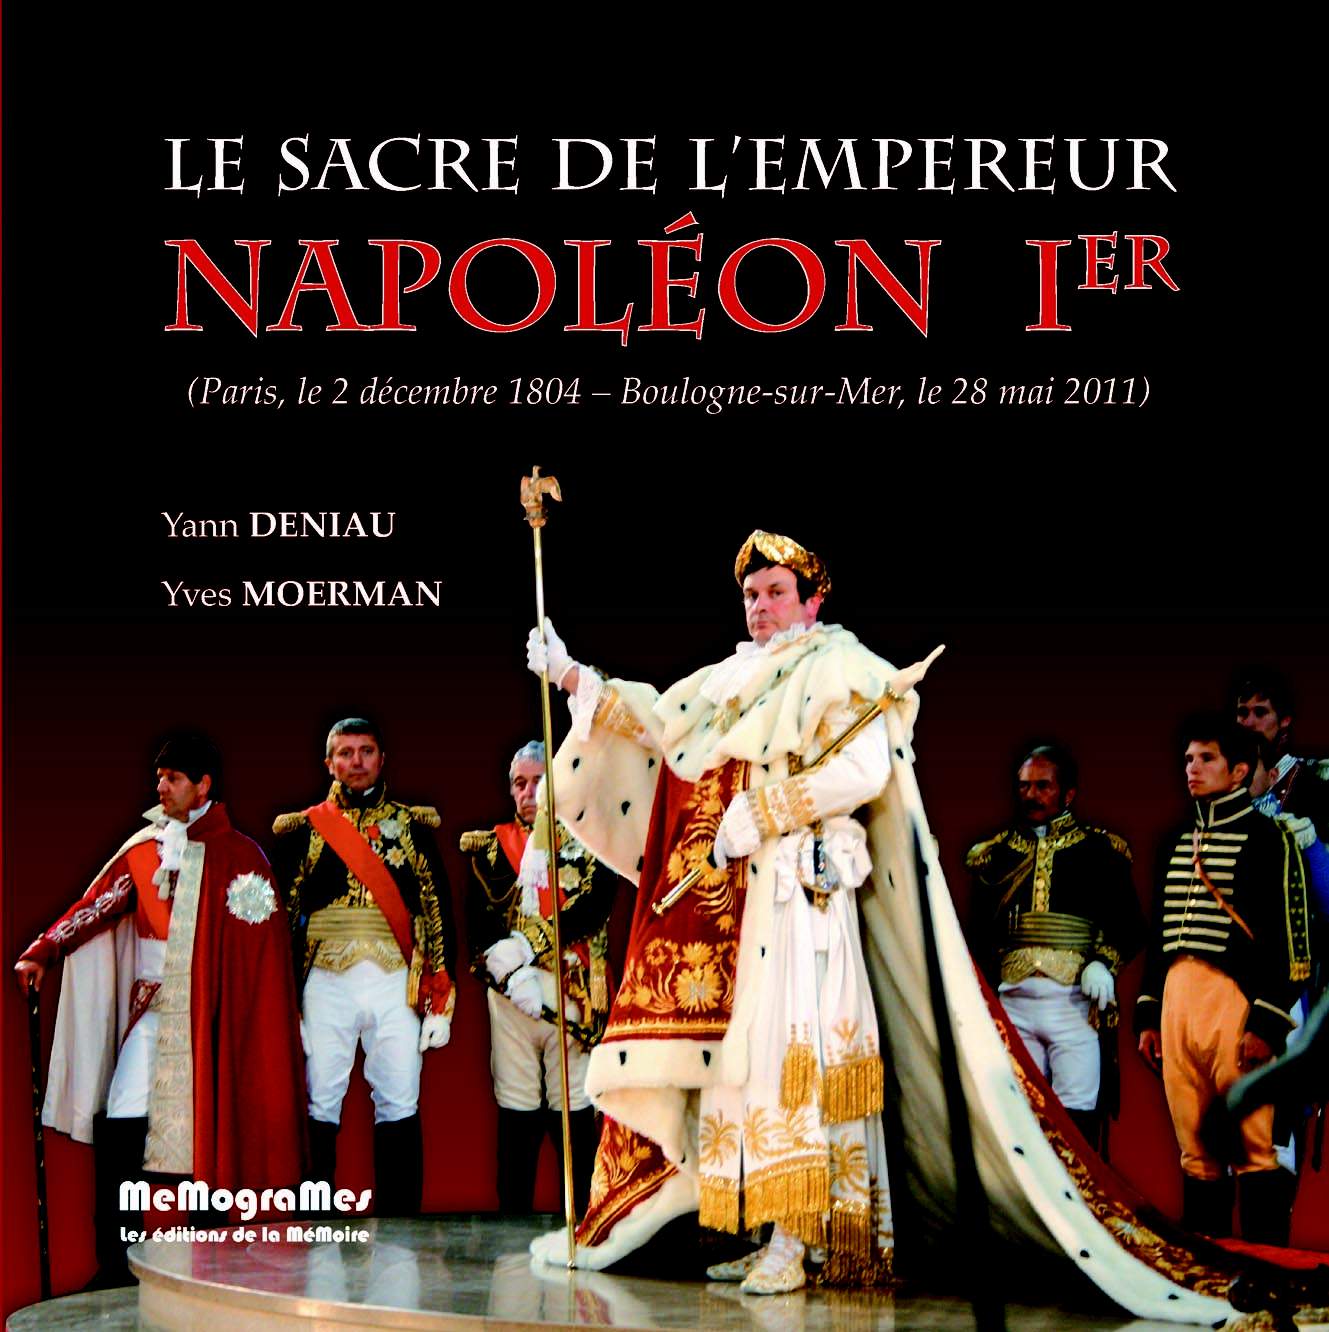 Le Sacre de l'empereur Napoléon Ier - © 2011